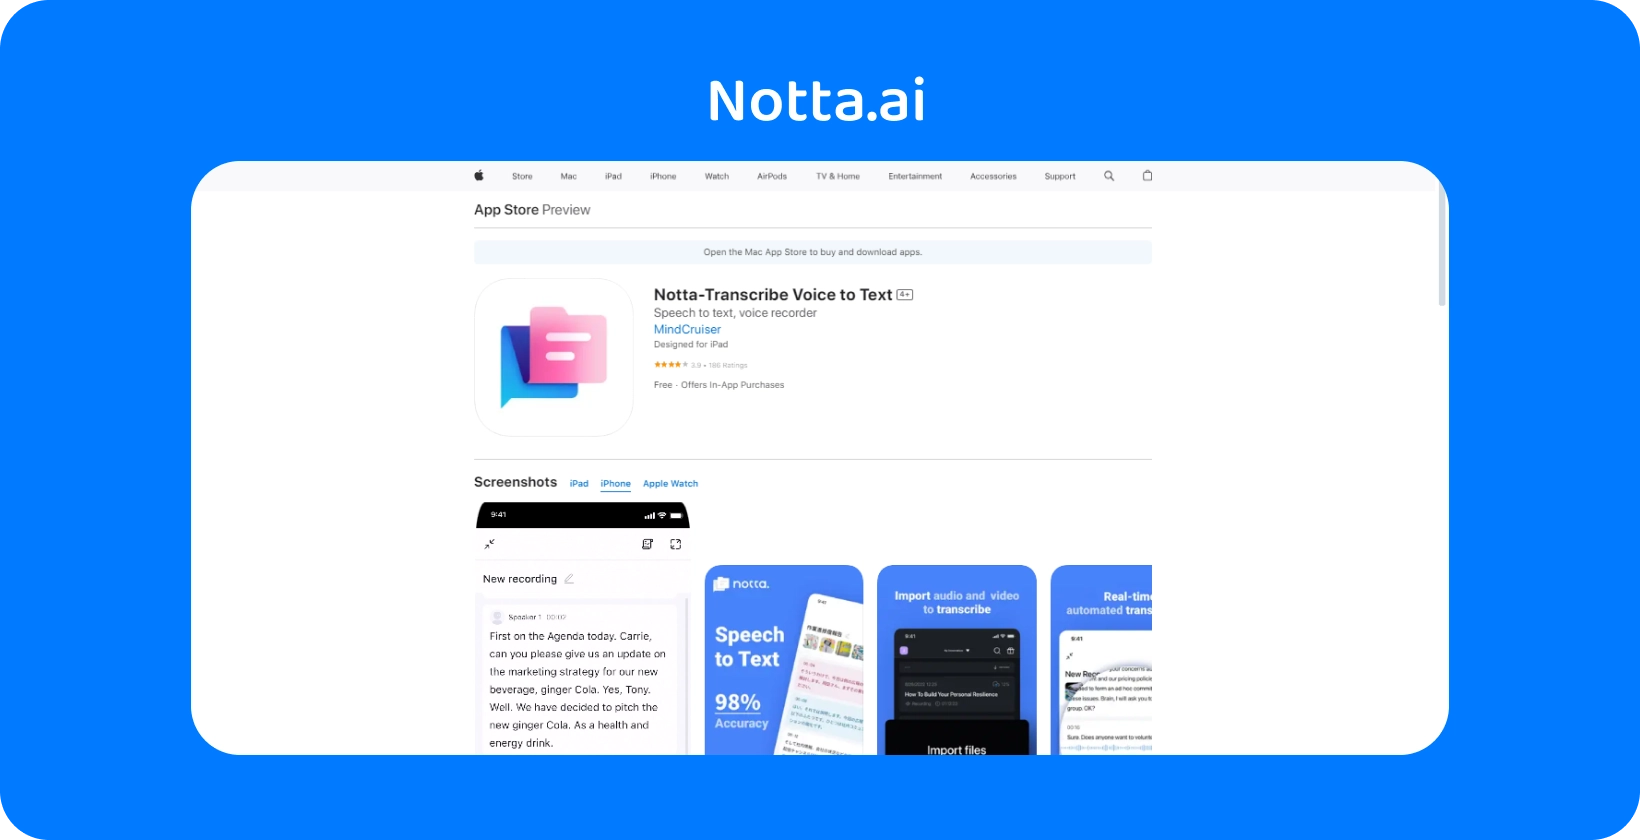 Η προεπισκόπηση App Store του Nota.ai με νέες δυνατότητες για τη μετατροπή φωνής σε κείμενο με AI ακρίβεια που παρουσιάζεται.